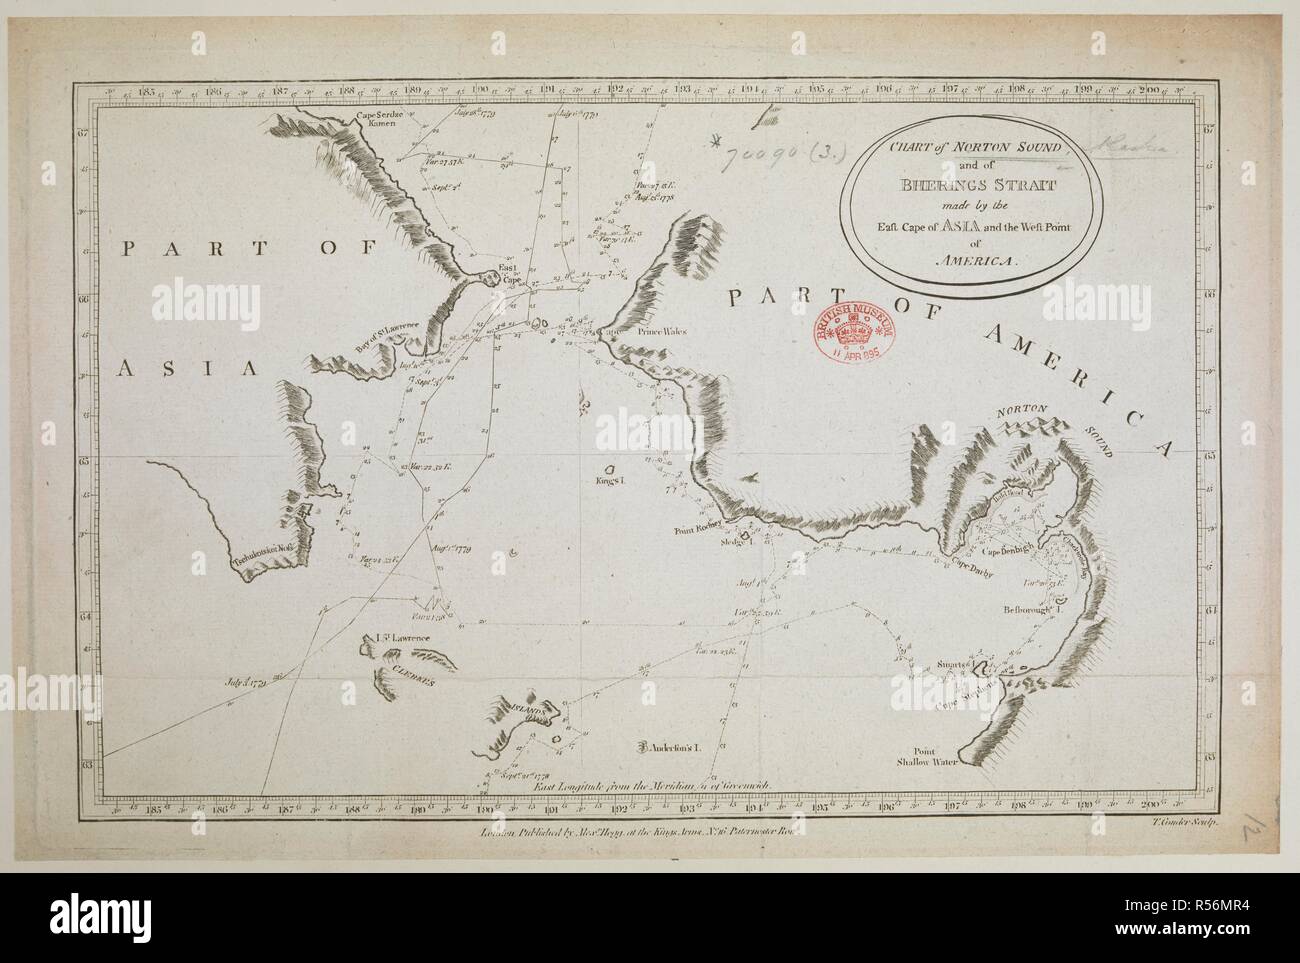 Ein Diagramm der Norton Sound und der Bering Strait. Diagramm der Norton Sound und der Bherings [sic] Strait... London, [1780?]. Quelle: Karten* 70090. (3.). Sprache: Englisch. Stockfoto